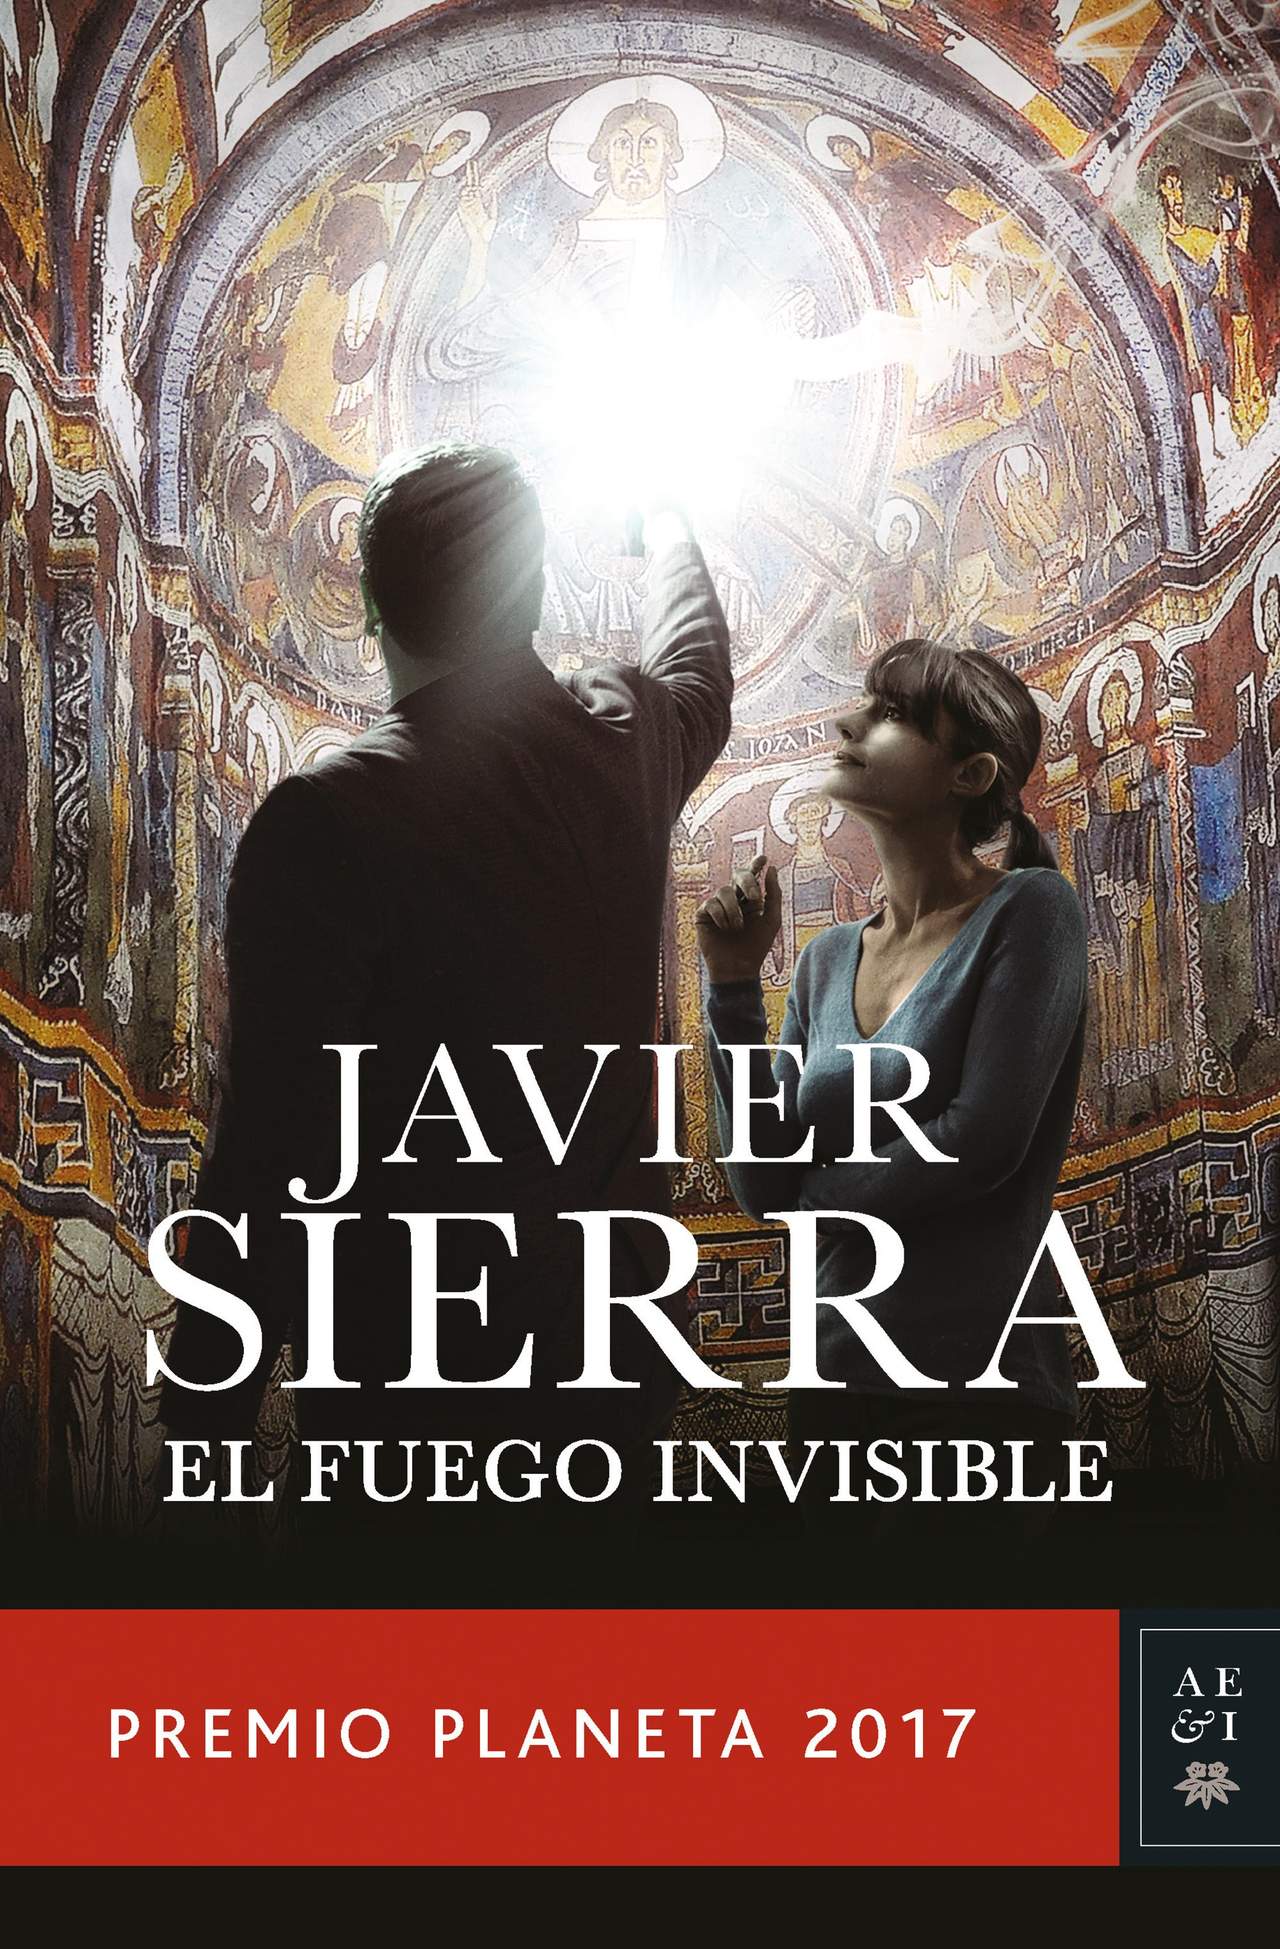 Sierra, quien se hizo acreedor al Premio Planeta en su edición de este 2017, está por presentar su obra El fuego invisible. (CORTESÍA)